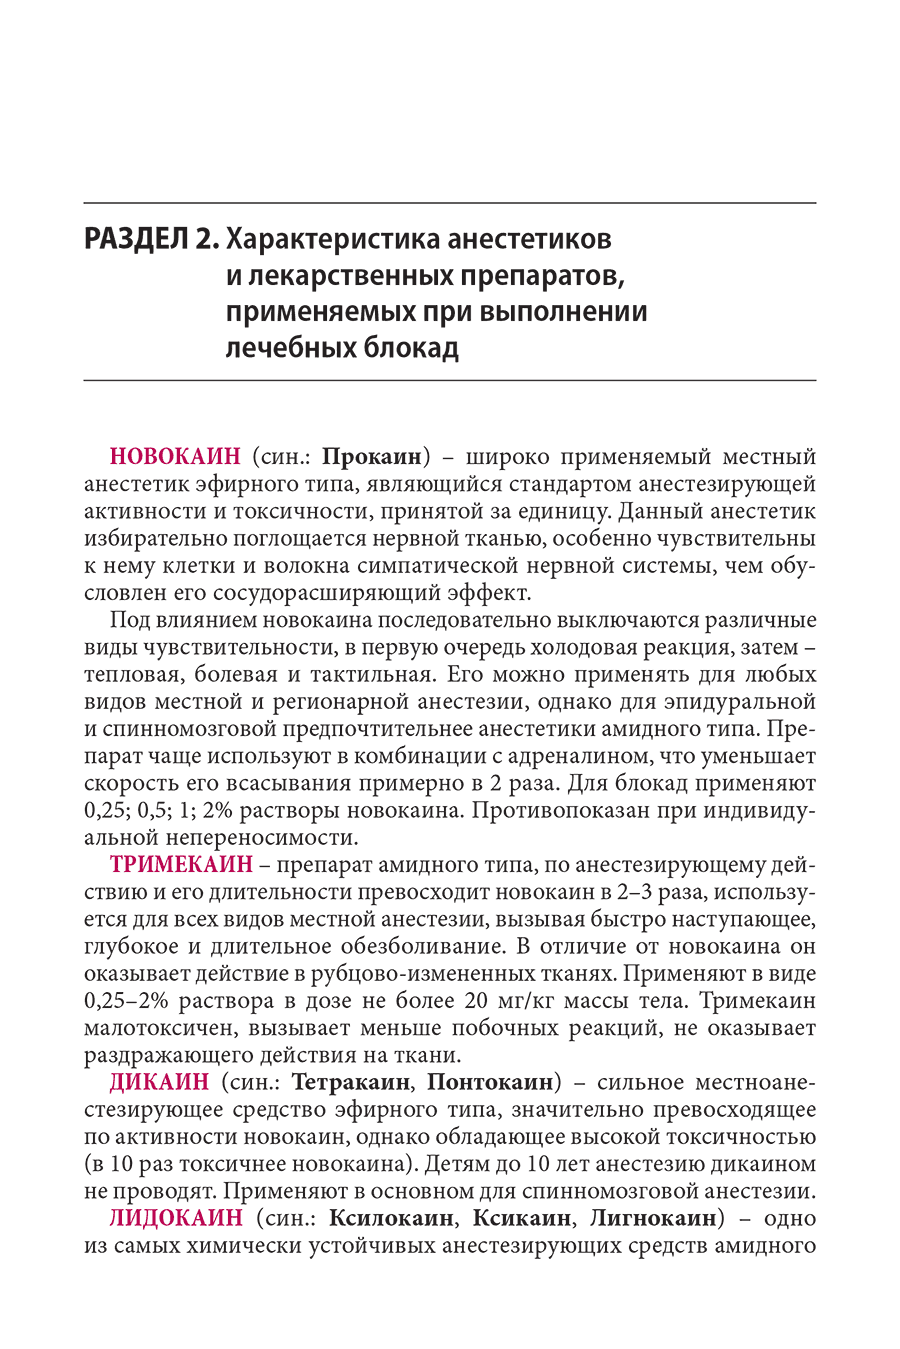 Пример страницы из книги "Блокады в травматологии и ортопедии" - Куценко С. Н.